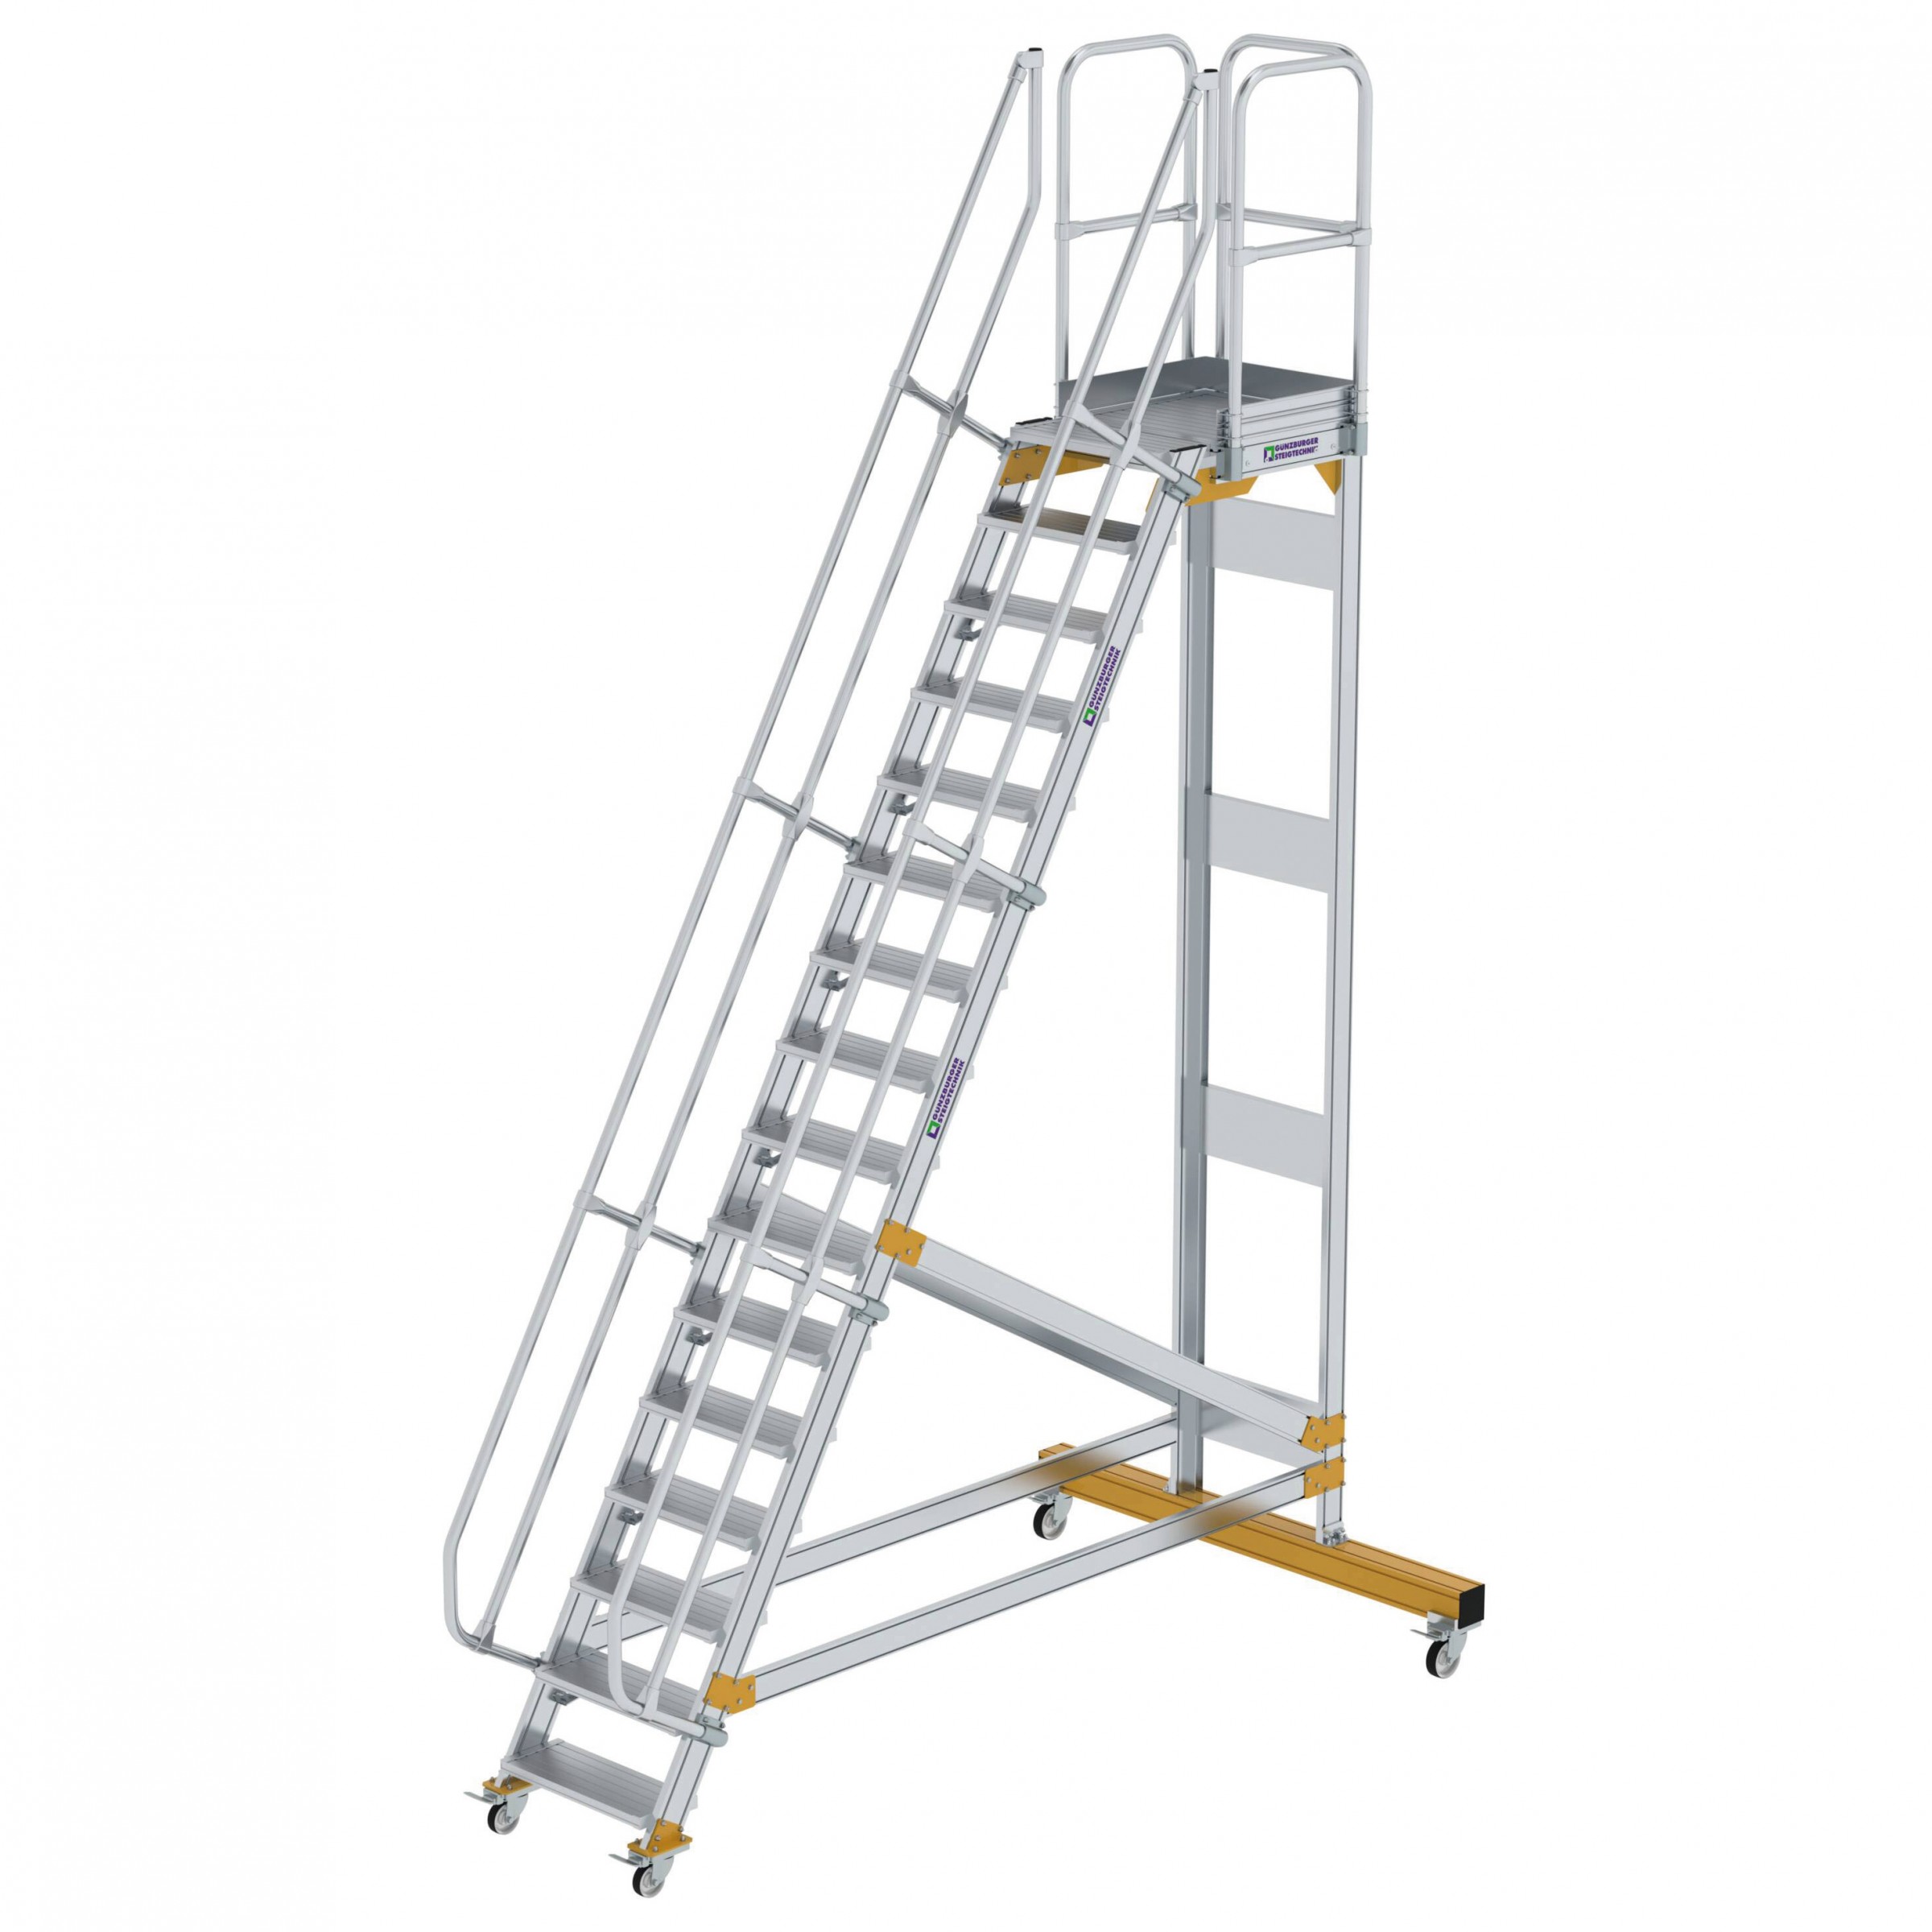 Aluminium-Plattform-Treppe fahrbar 60°, Stufenbreite 600 mm, 4 Stufen